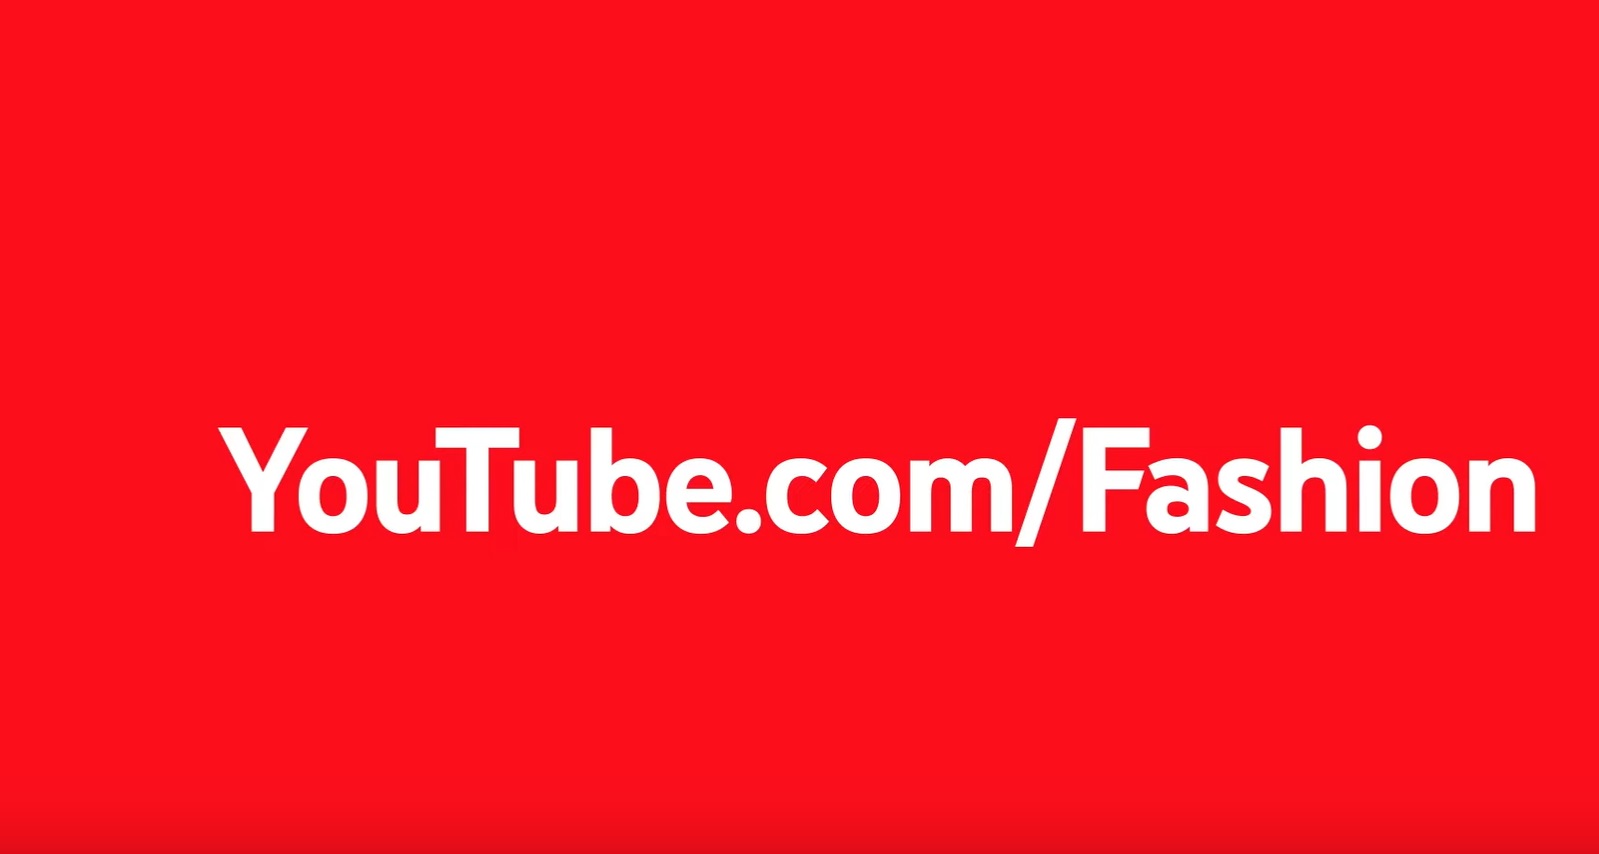 #YouTubeFashion, #YouTubeBeauty, programapublicidad,